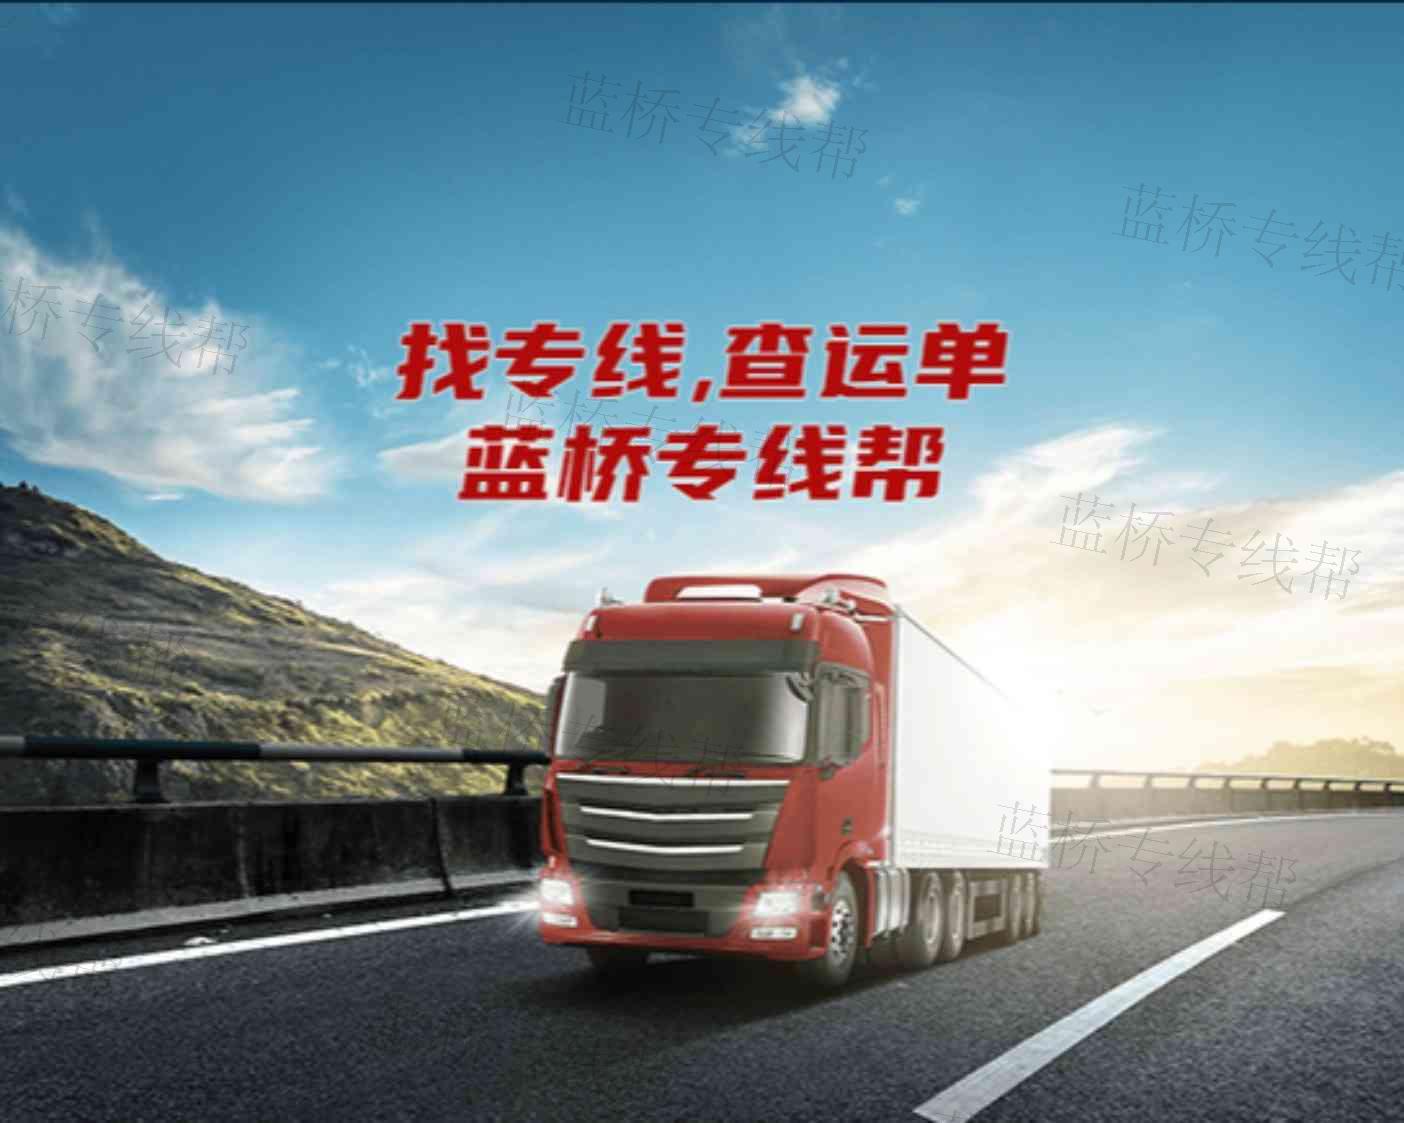 广州市路丰物流有限公司清远业务部